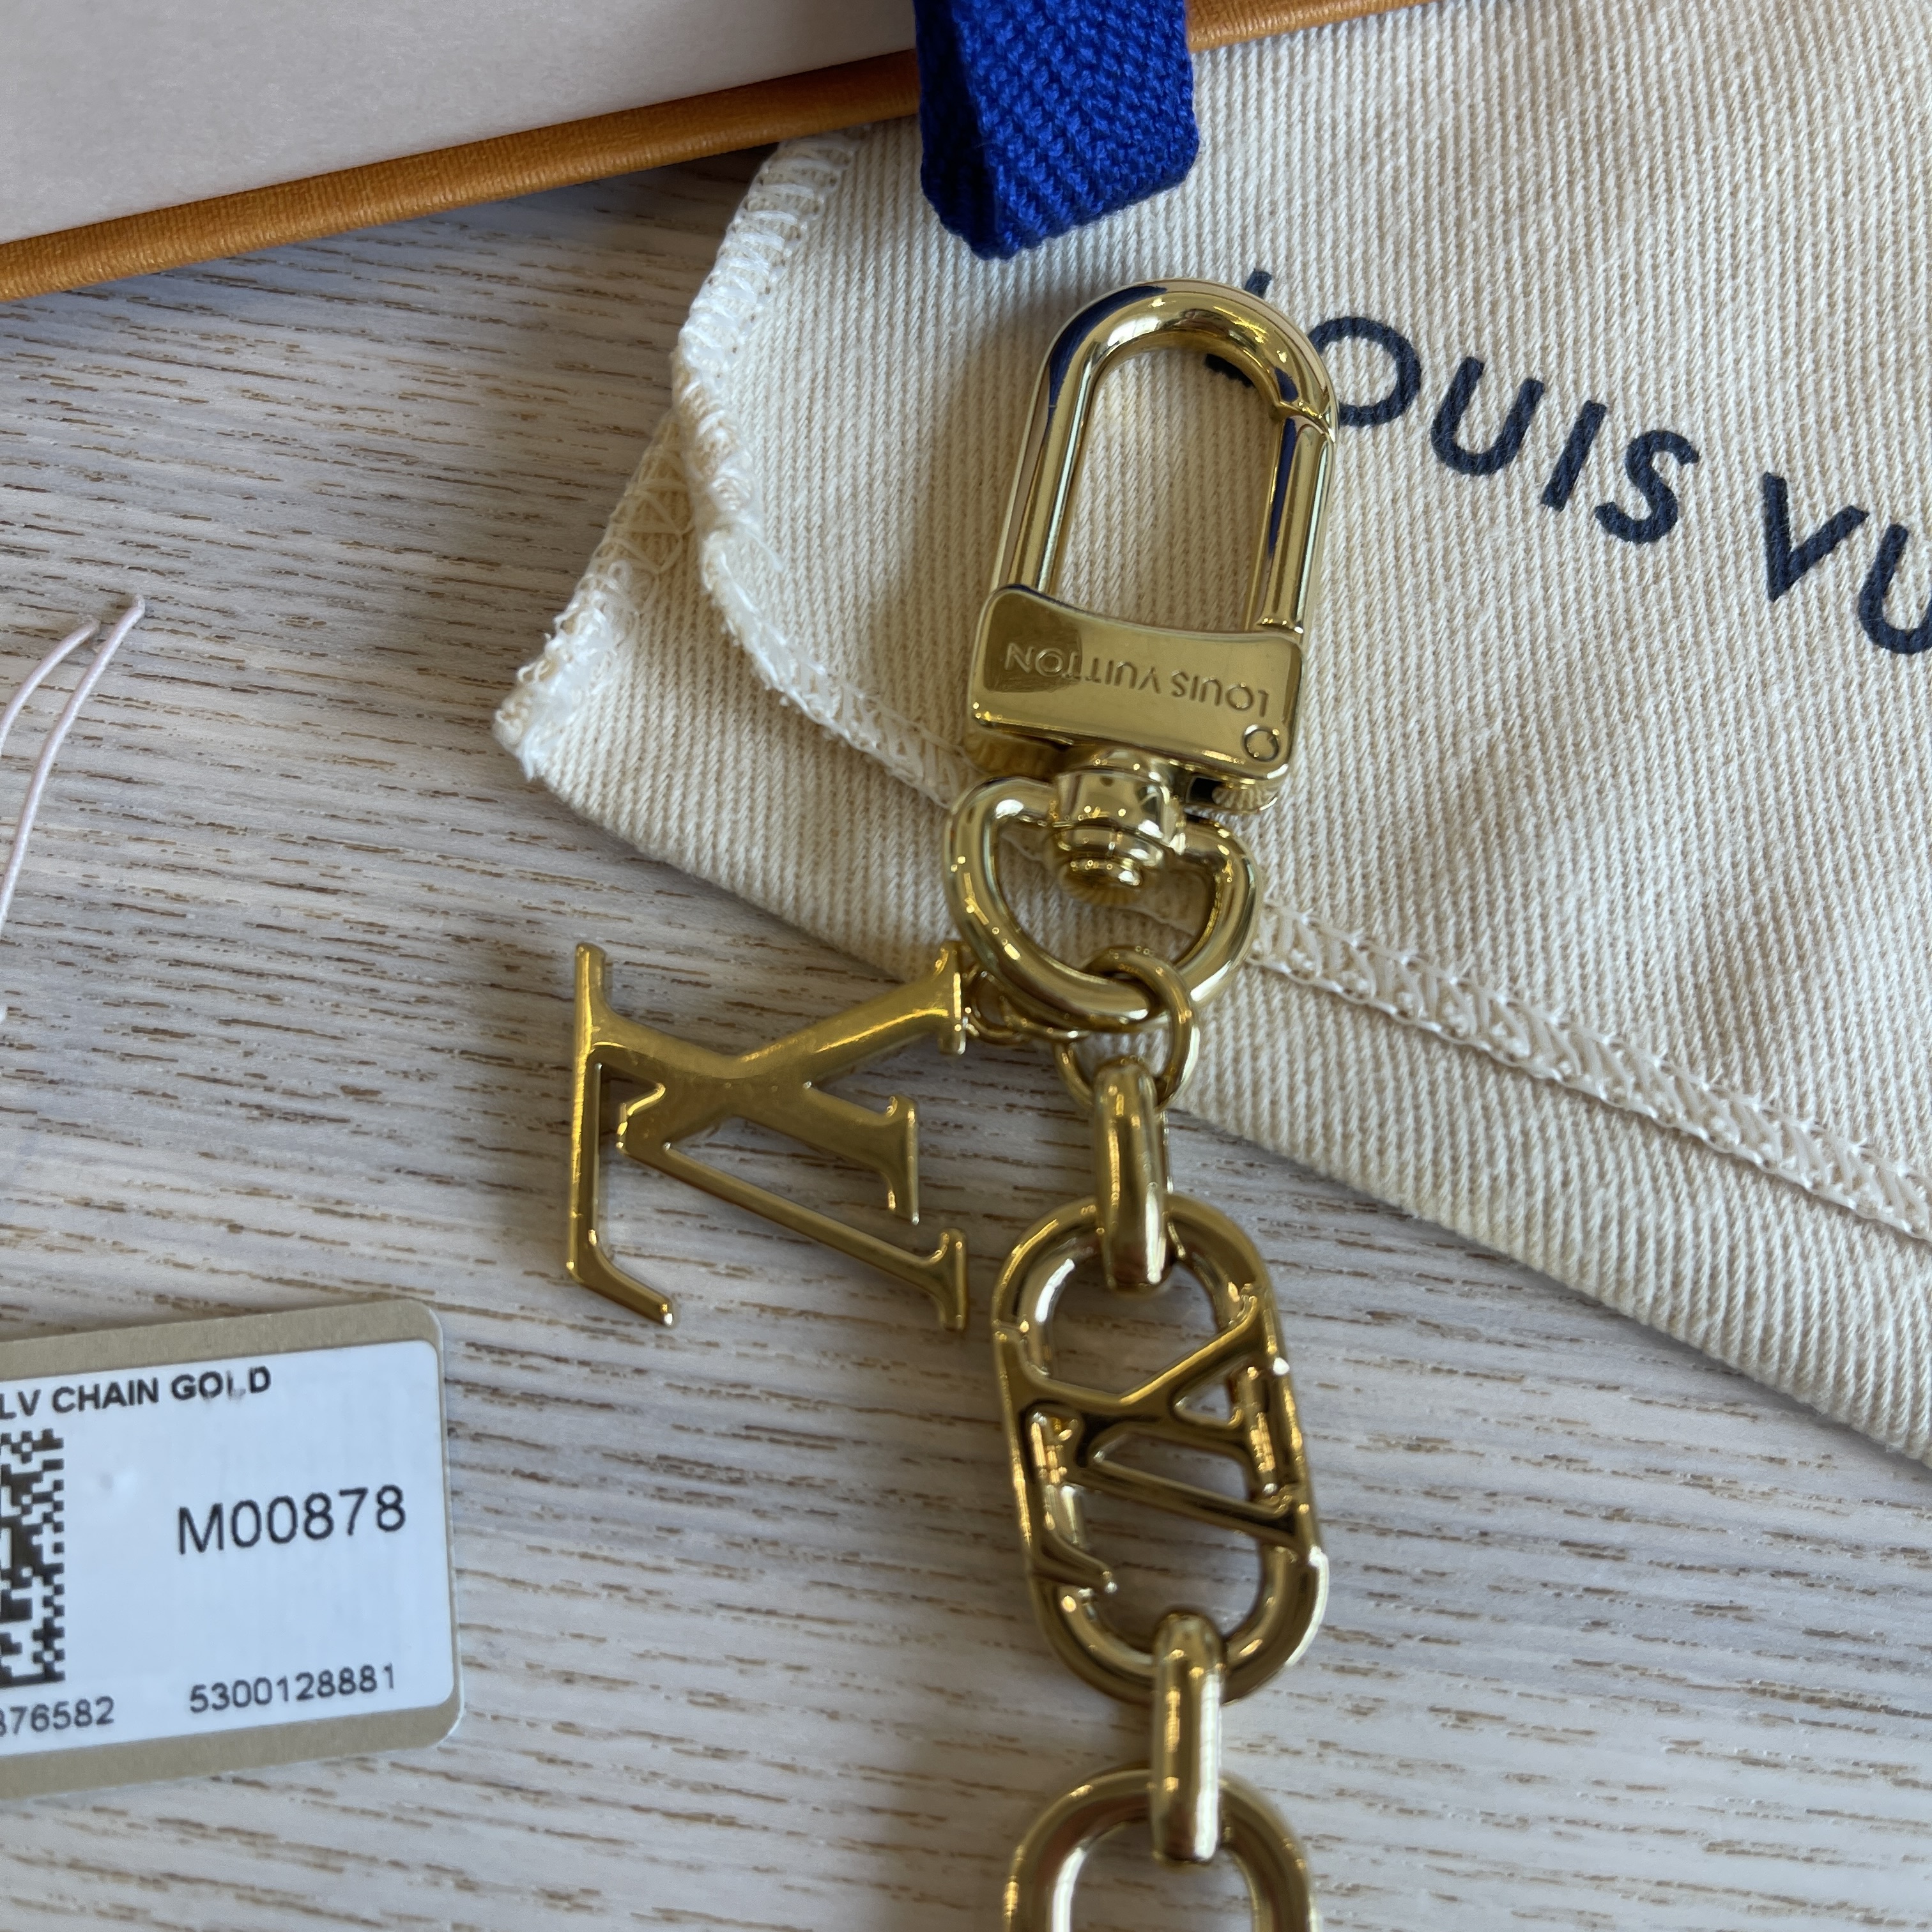 LOUIS VUITTON Metal My LV Chain Bag Charm Gold 1259766